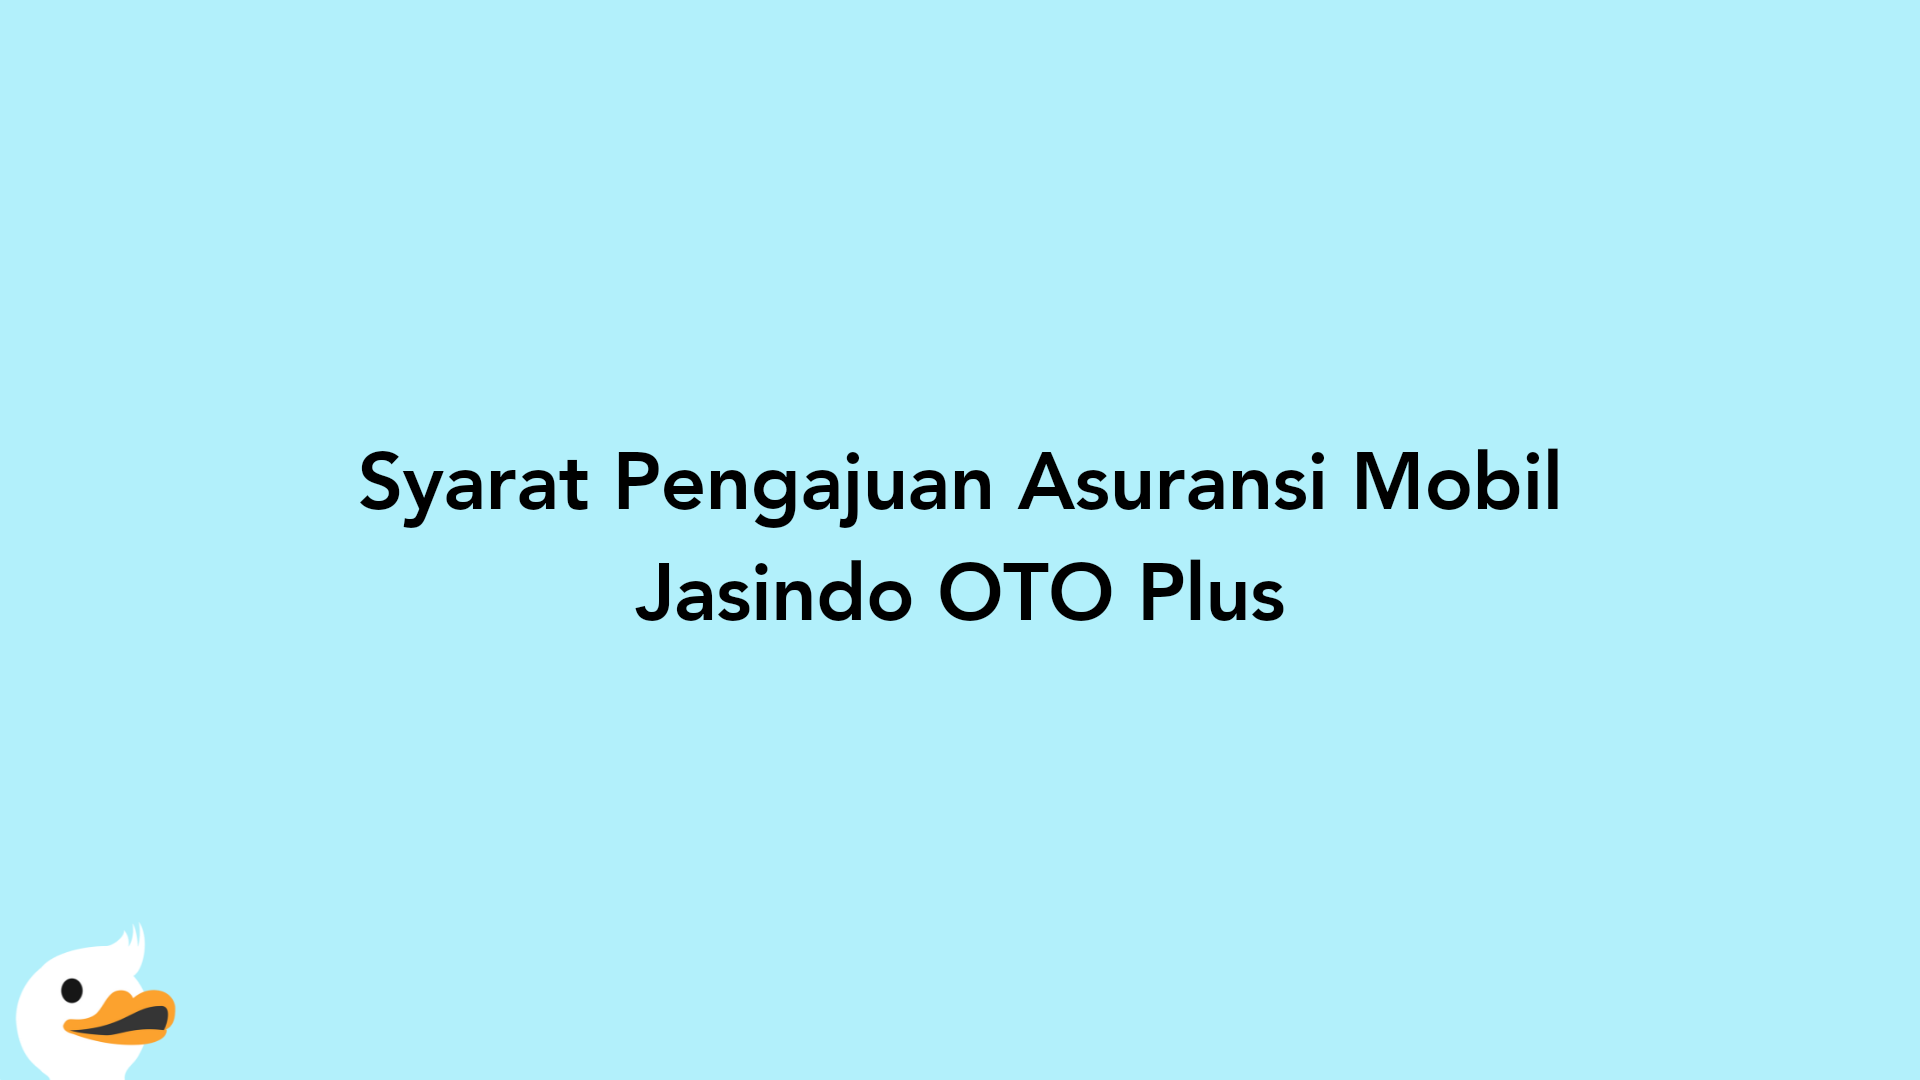 Syarat Pengajuan Asuransi Mobil Jasindo OTO Plus